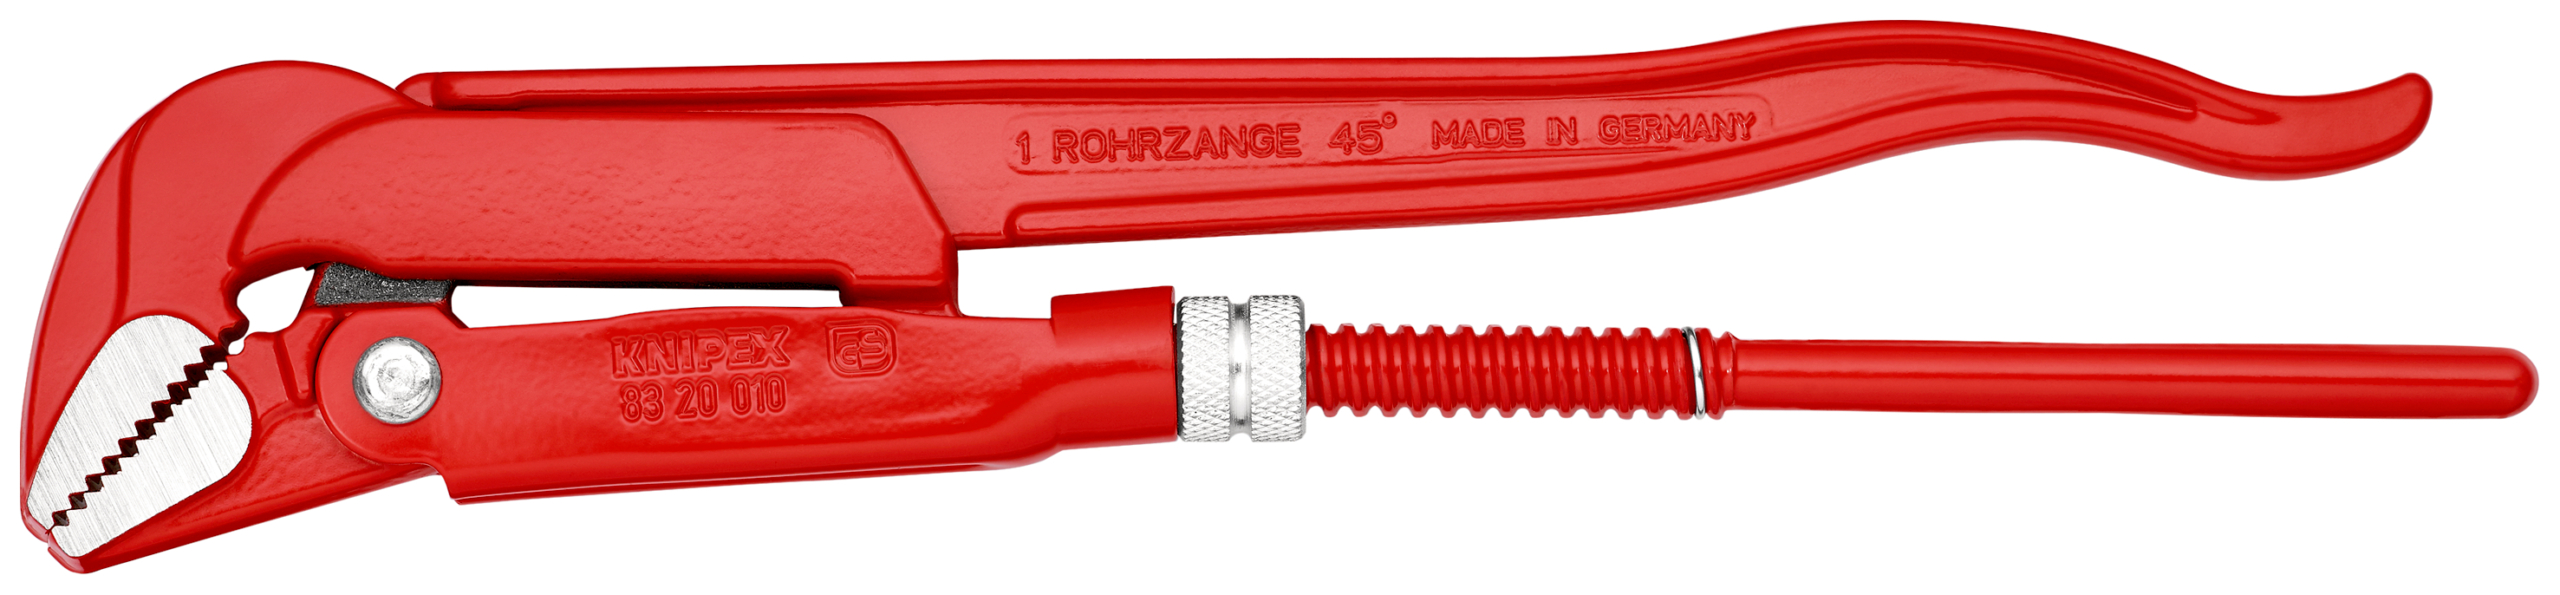 KNIPEX Rörtänger 8320 - 320 mm